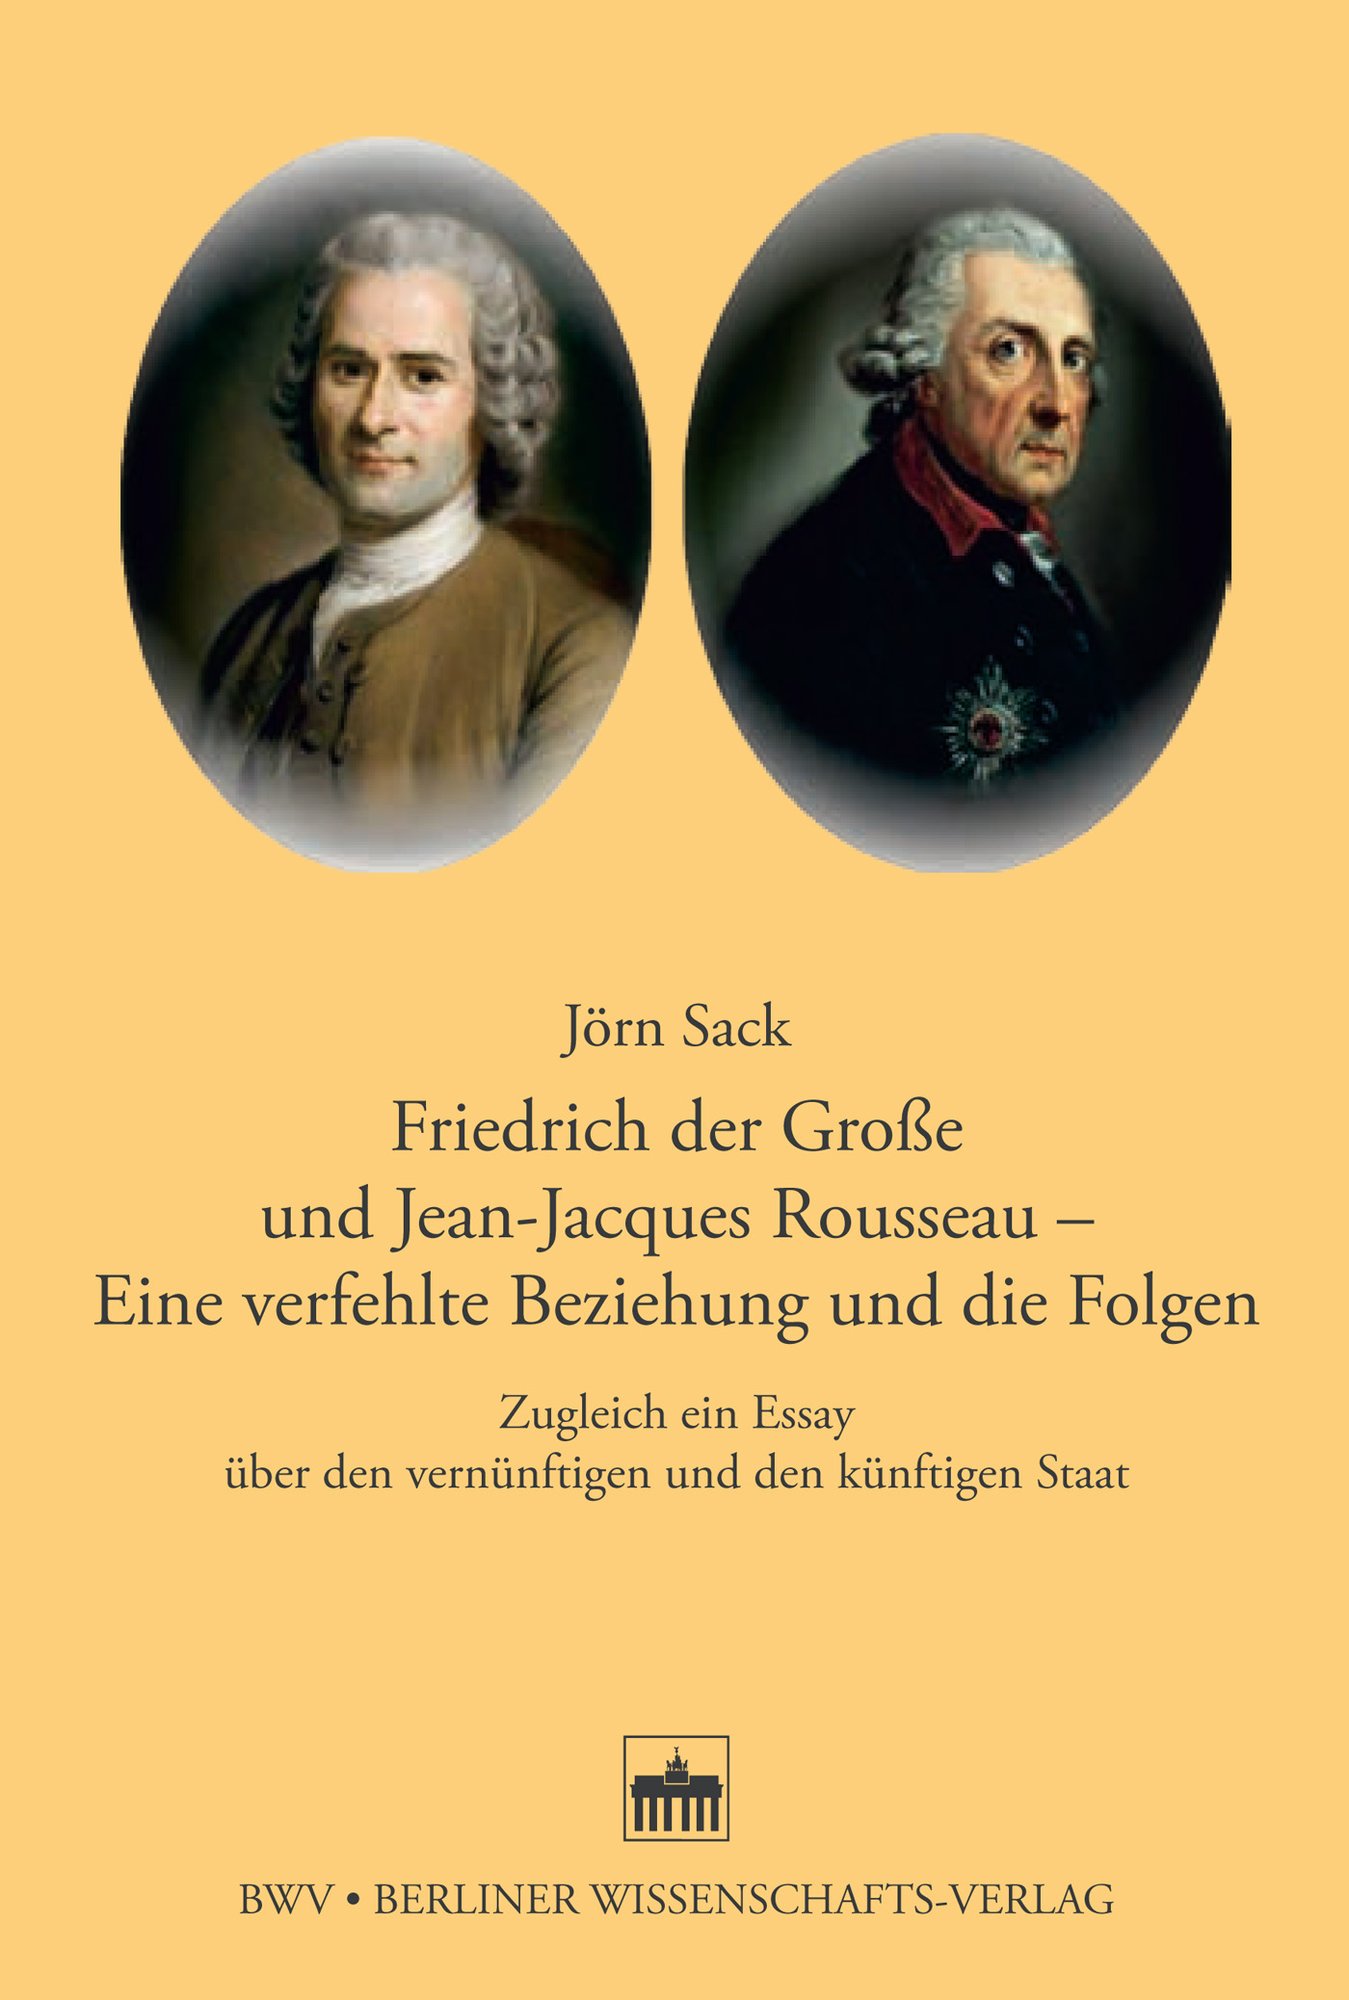 Friedrich der Große und Jean-Jacques Rosseau - Eine verfehlte Beziehung und die Folgen